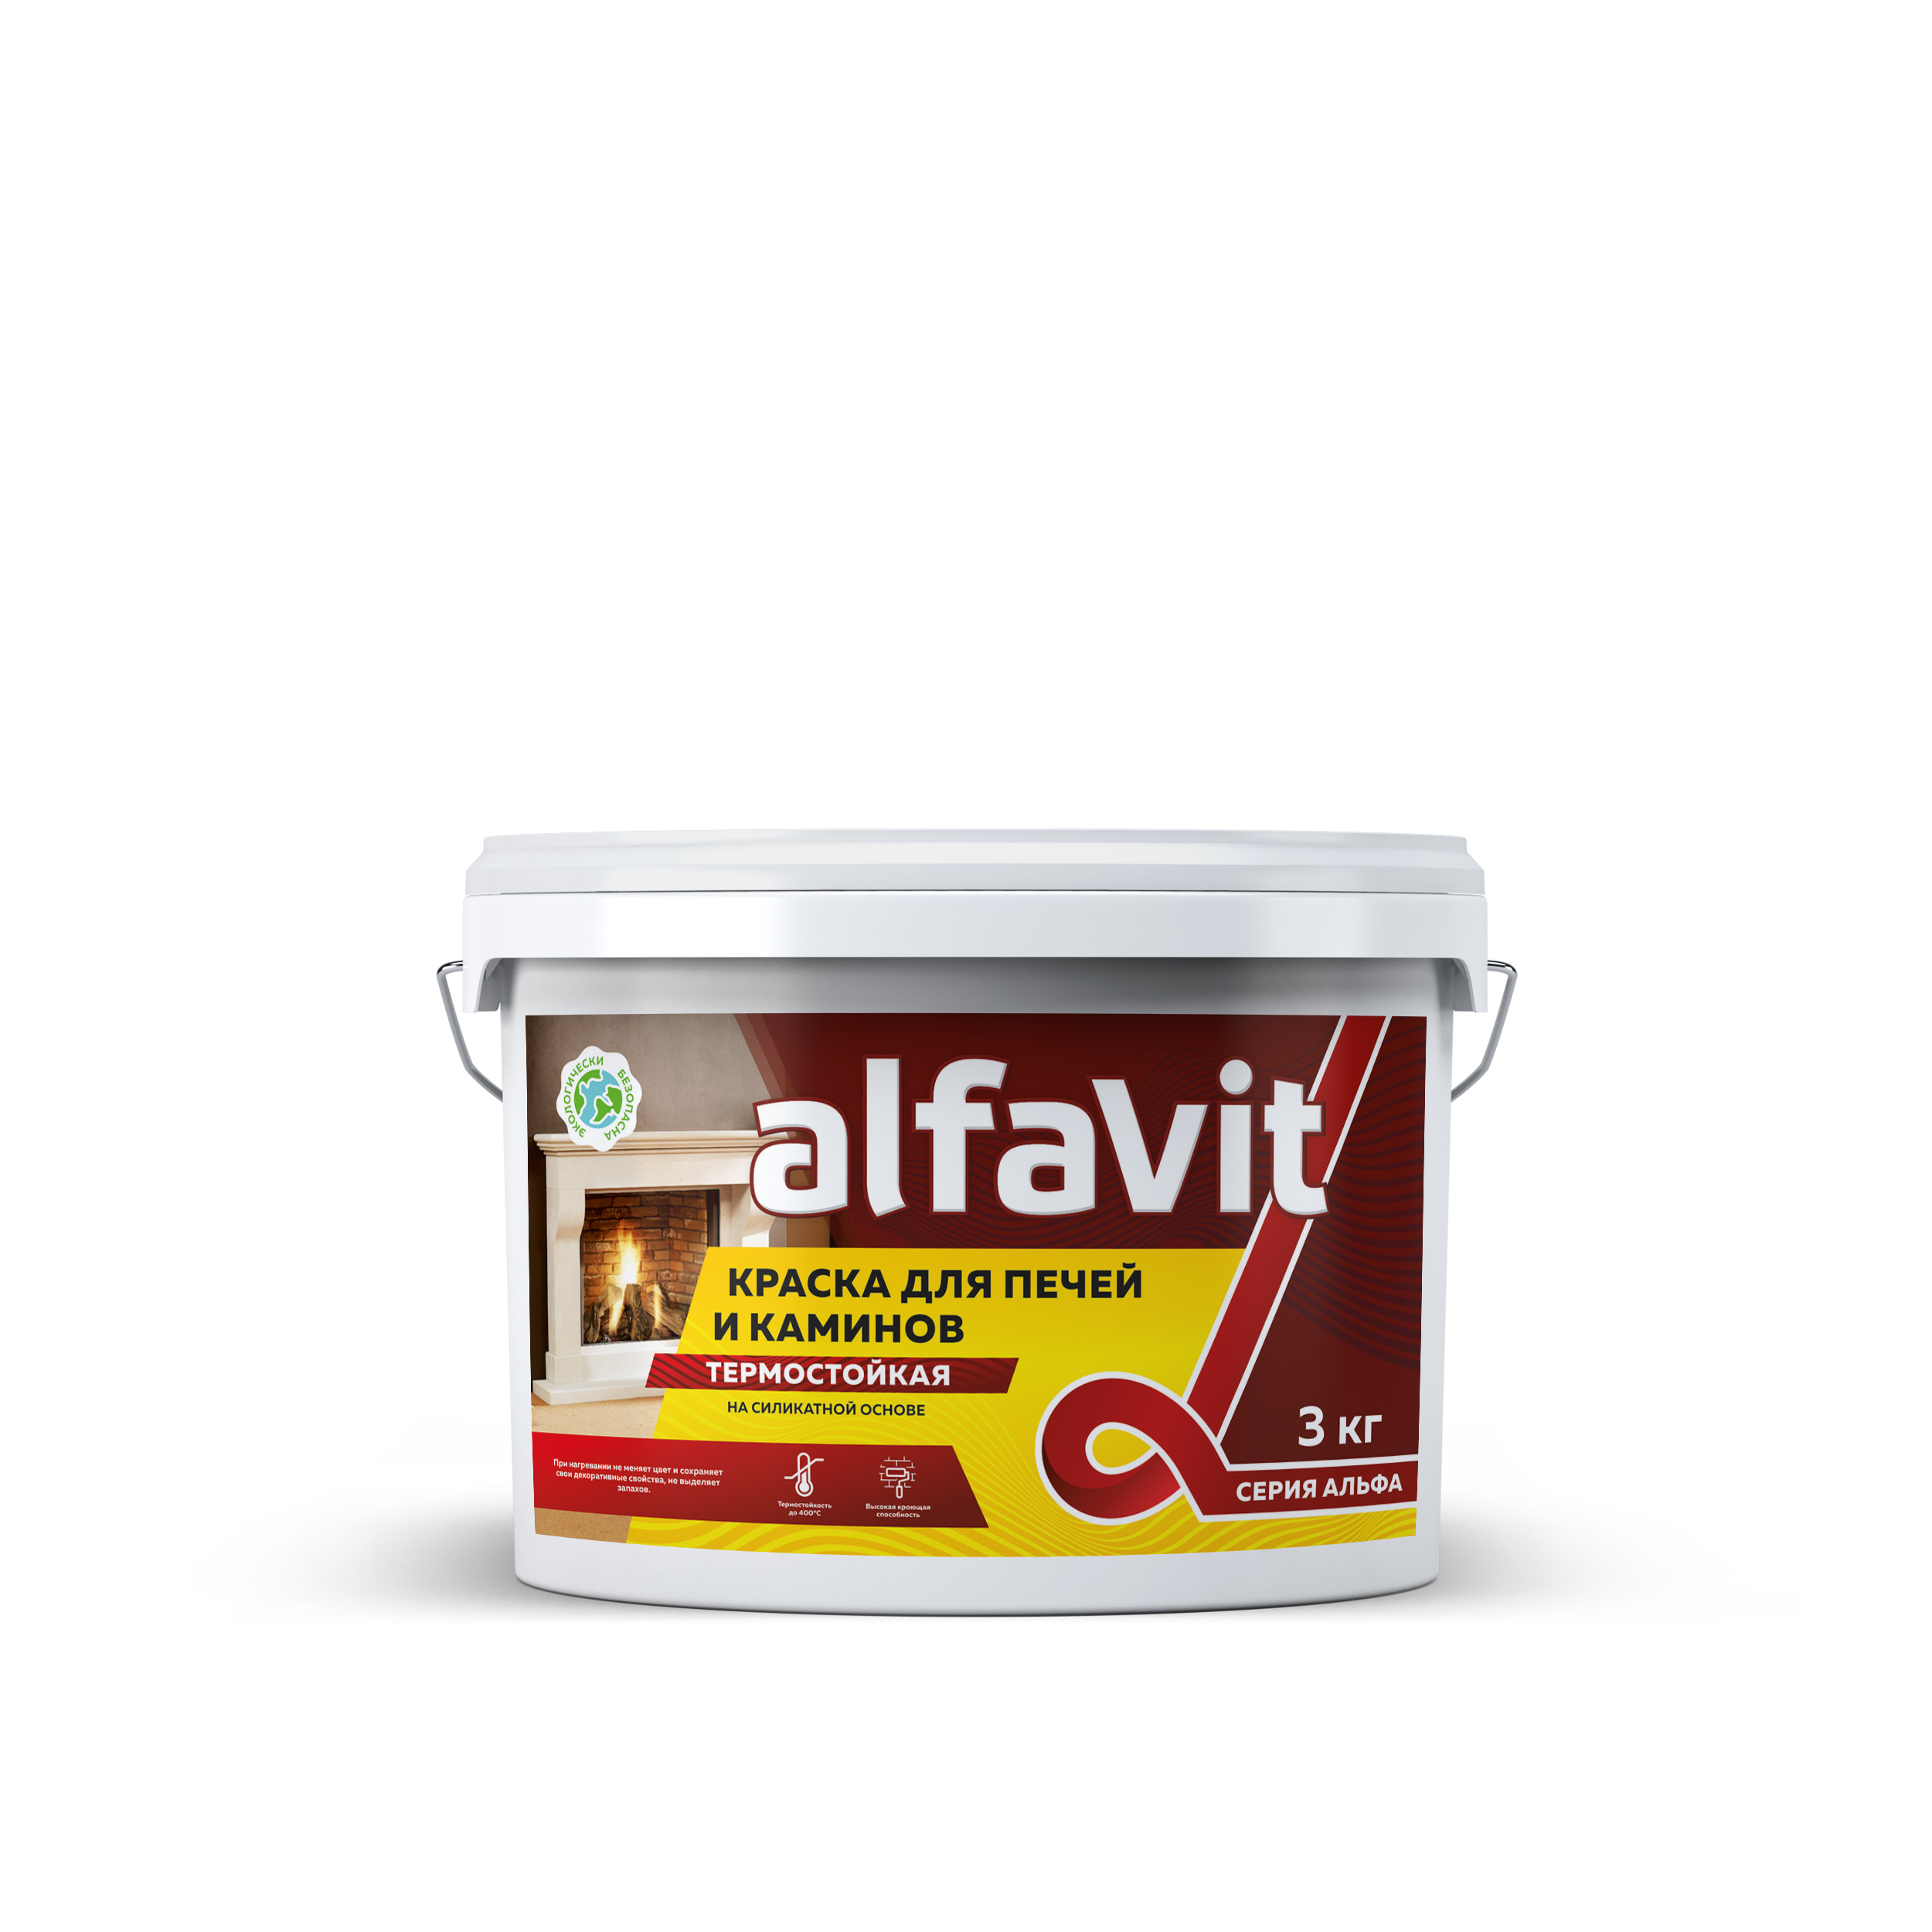 Краска для печей и каминов термостойкая Alfavit серия Альфа, красно-коричневая, 1,3 кг краска для печей и каминов palizh